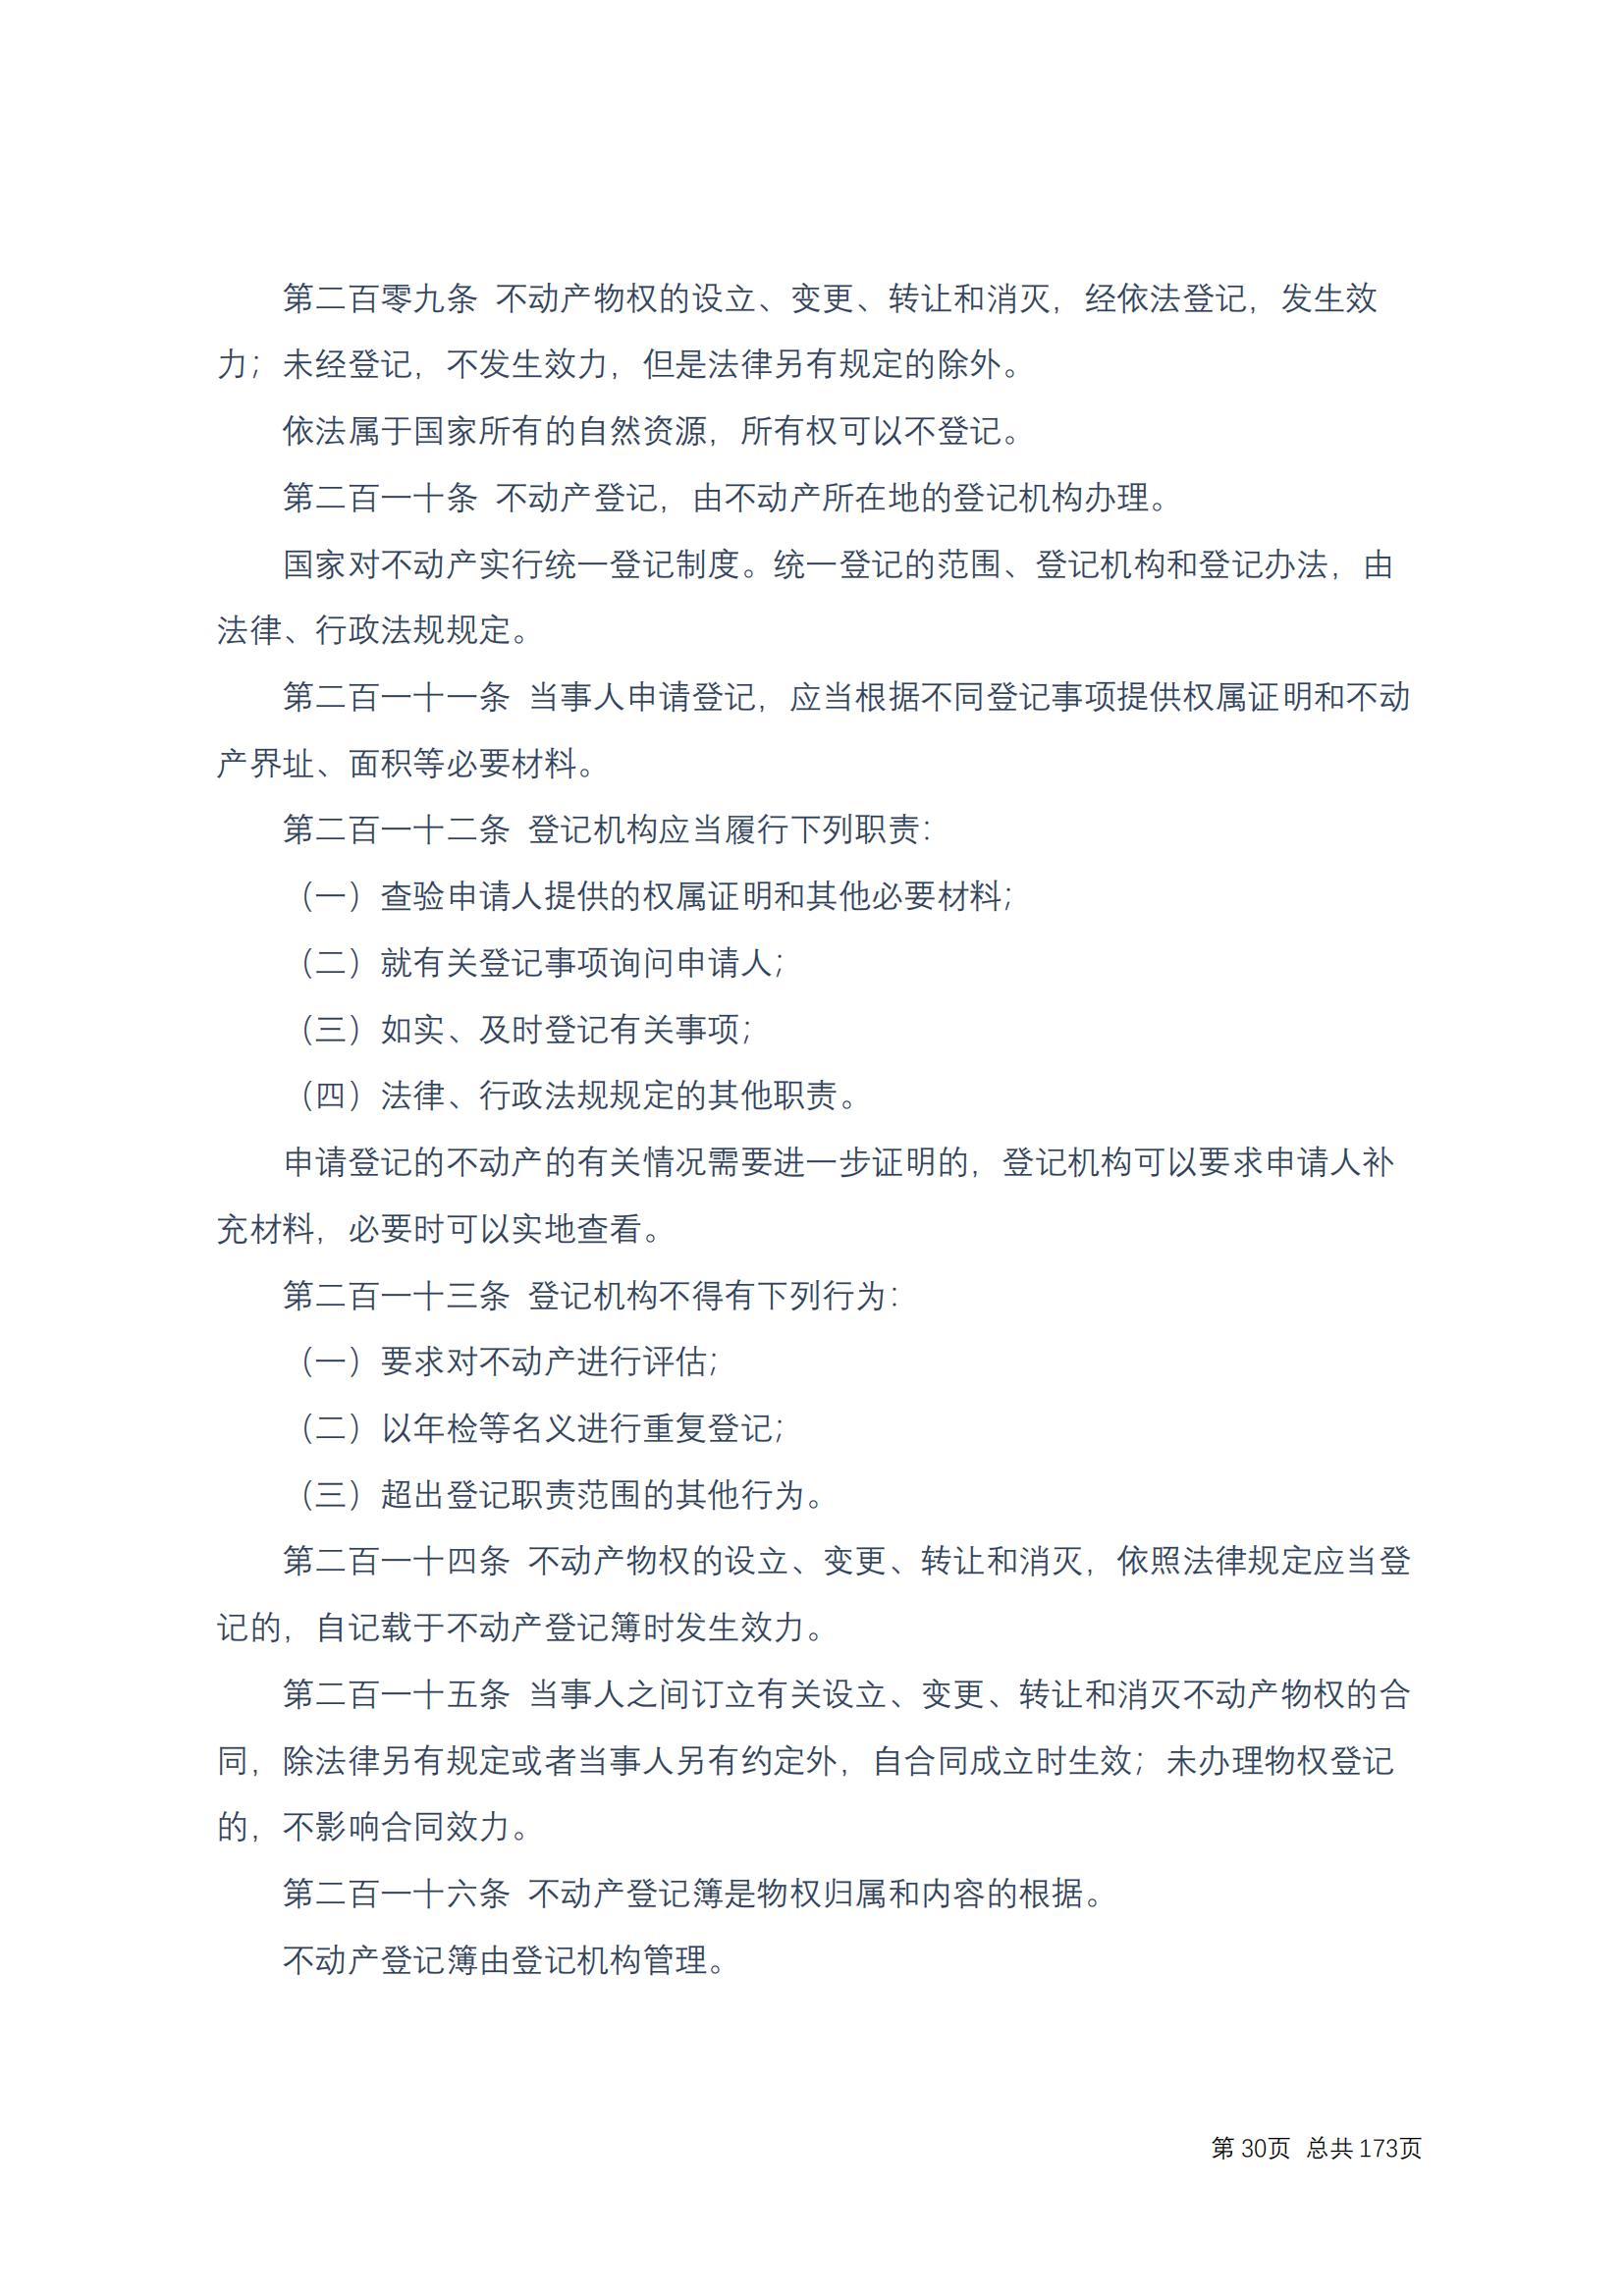 中华人民共和国民法典 修改过_29